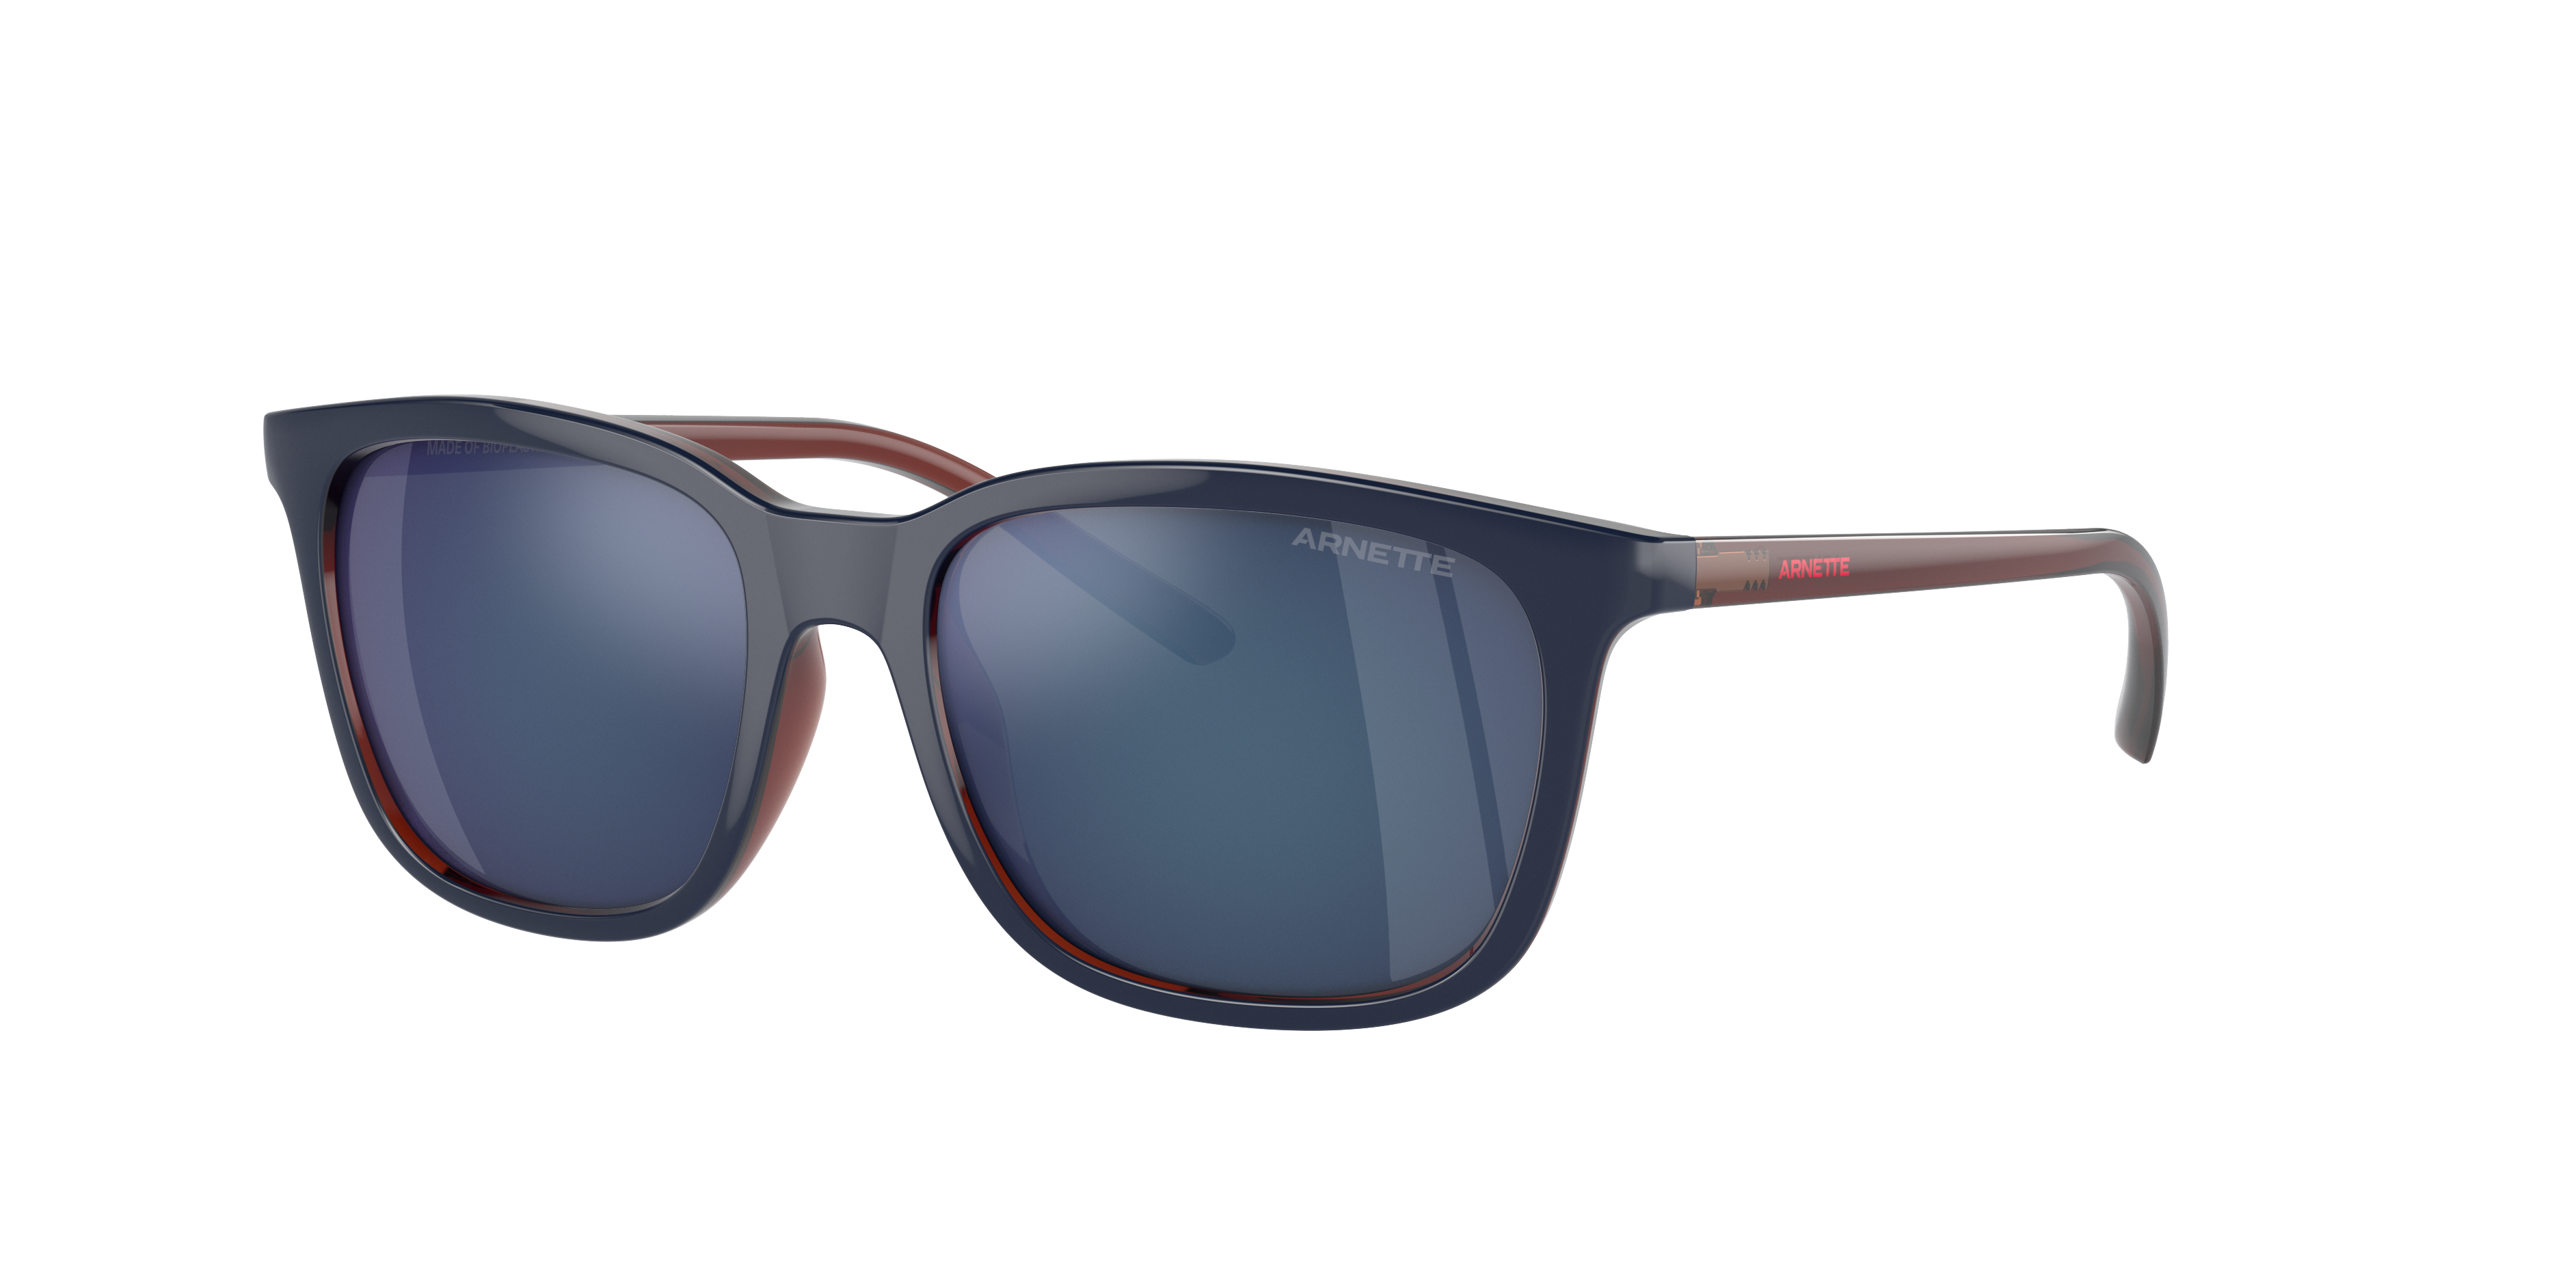 Consulte nosso catálogo de Óculos de Sol Arnette Eyewear com diversos modelos e preços para sua escolha.